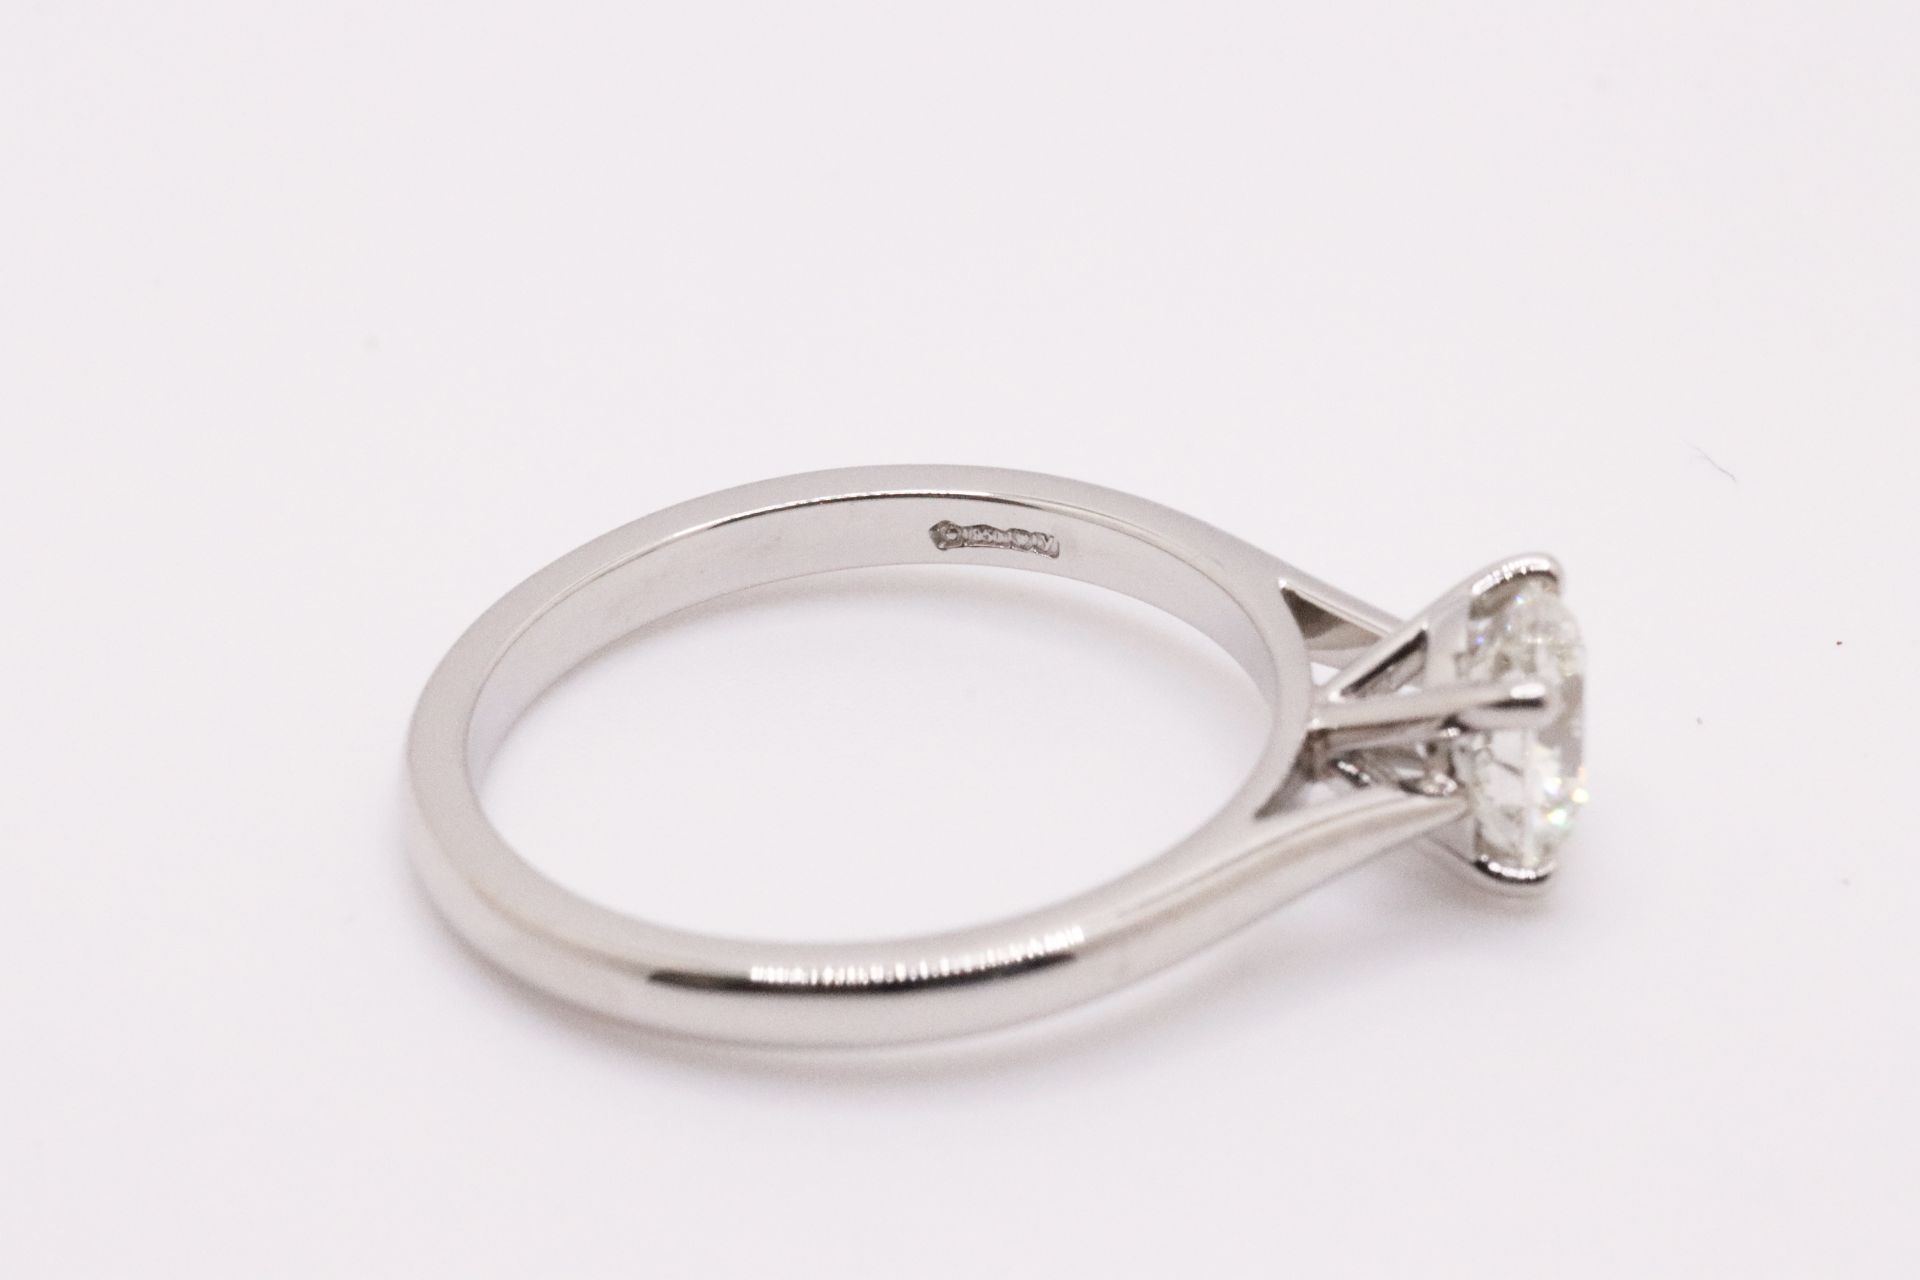 Round Brilliant Cut Natural Diamond Platinum Ring 1.20 Carat D Colour VS2 Clarity ID EX EX - GIA - Image 3 of 5